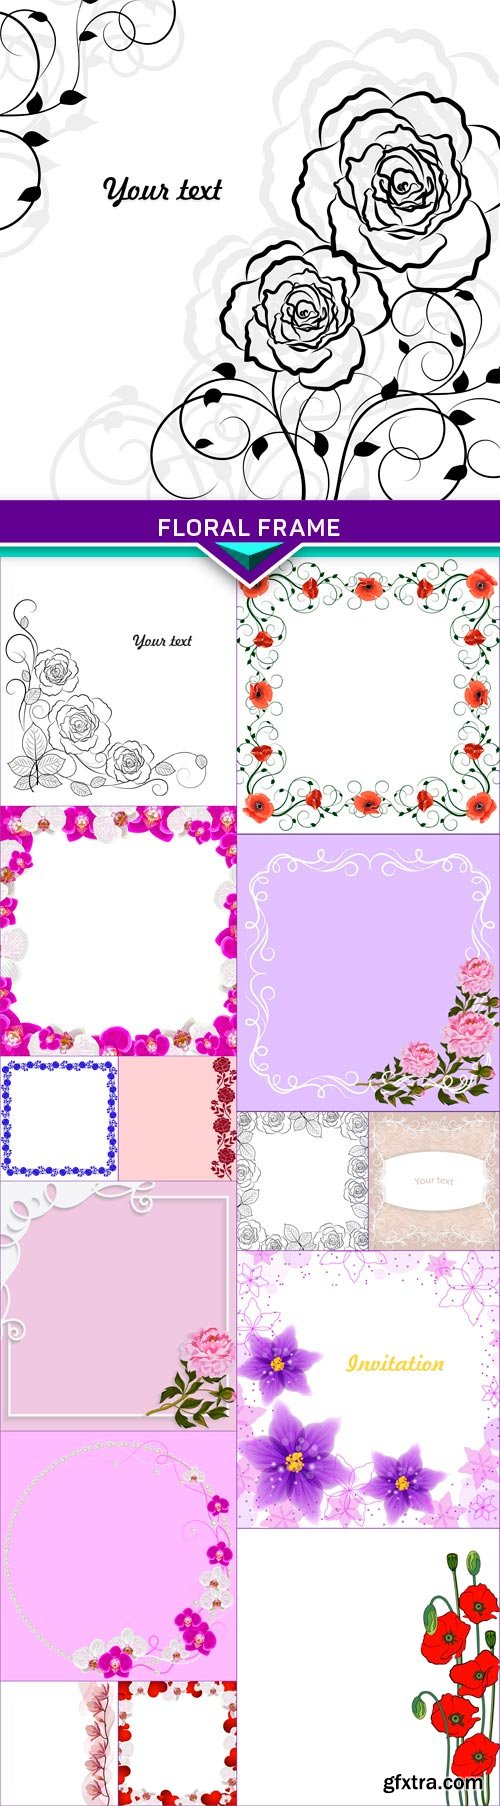 Floral frame1 15x EPS